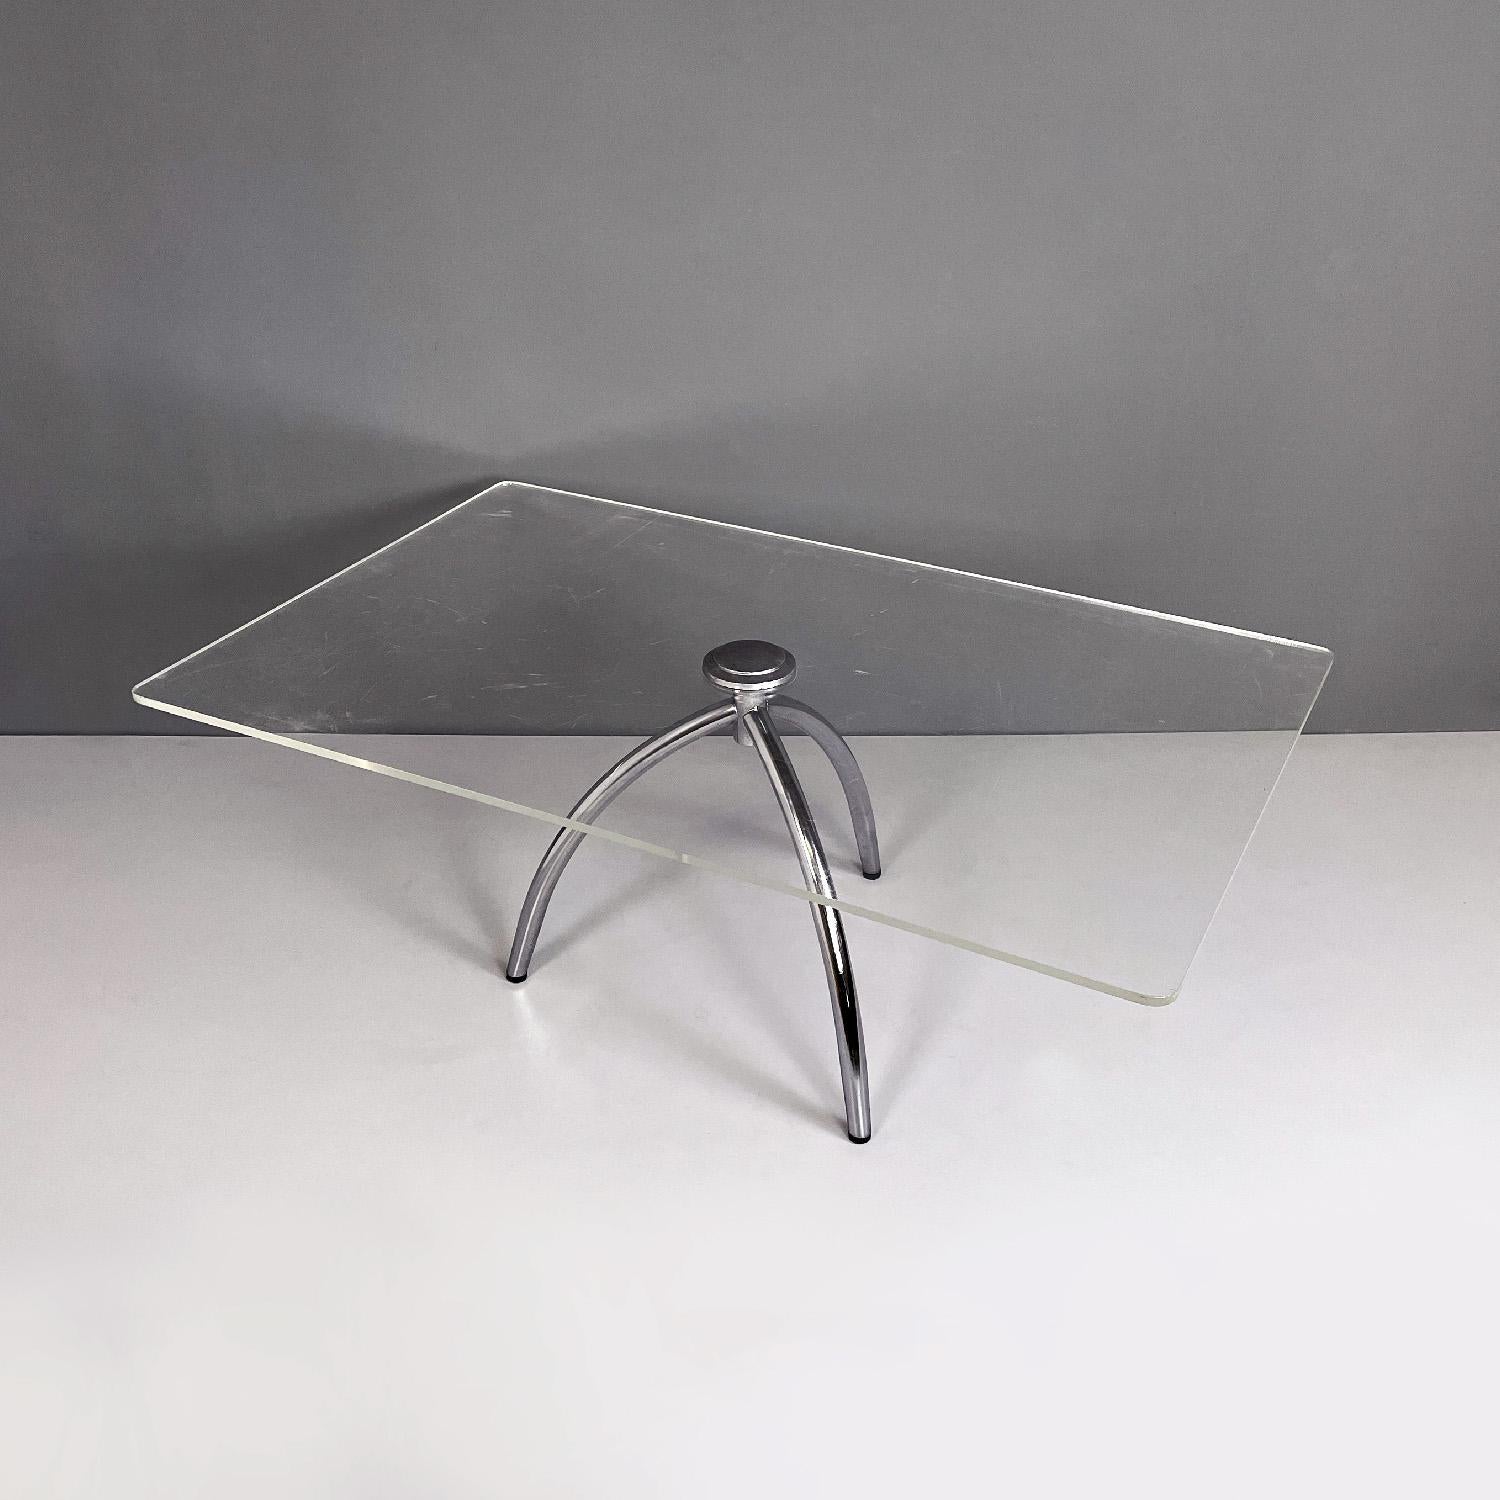 Italienischer moderner Couchtisch aus transparentem Plexiglas und Aluminiumstruktur, 1980er Jahre
Couchtisch mit rechteckiger Platte aus transparentem Plexiglas. Oben befindet sich ein rundes Aluminiumelement, das es mit der Struktur verbindet, die